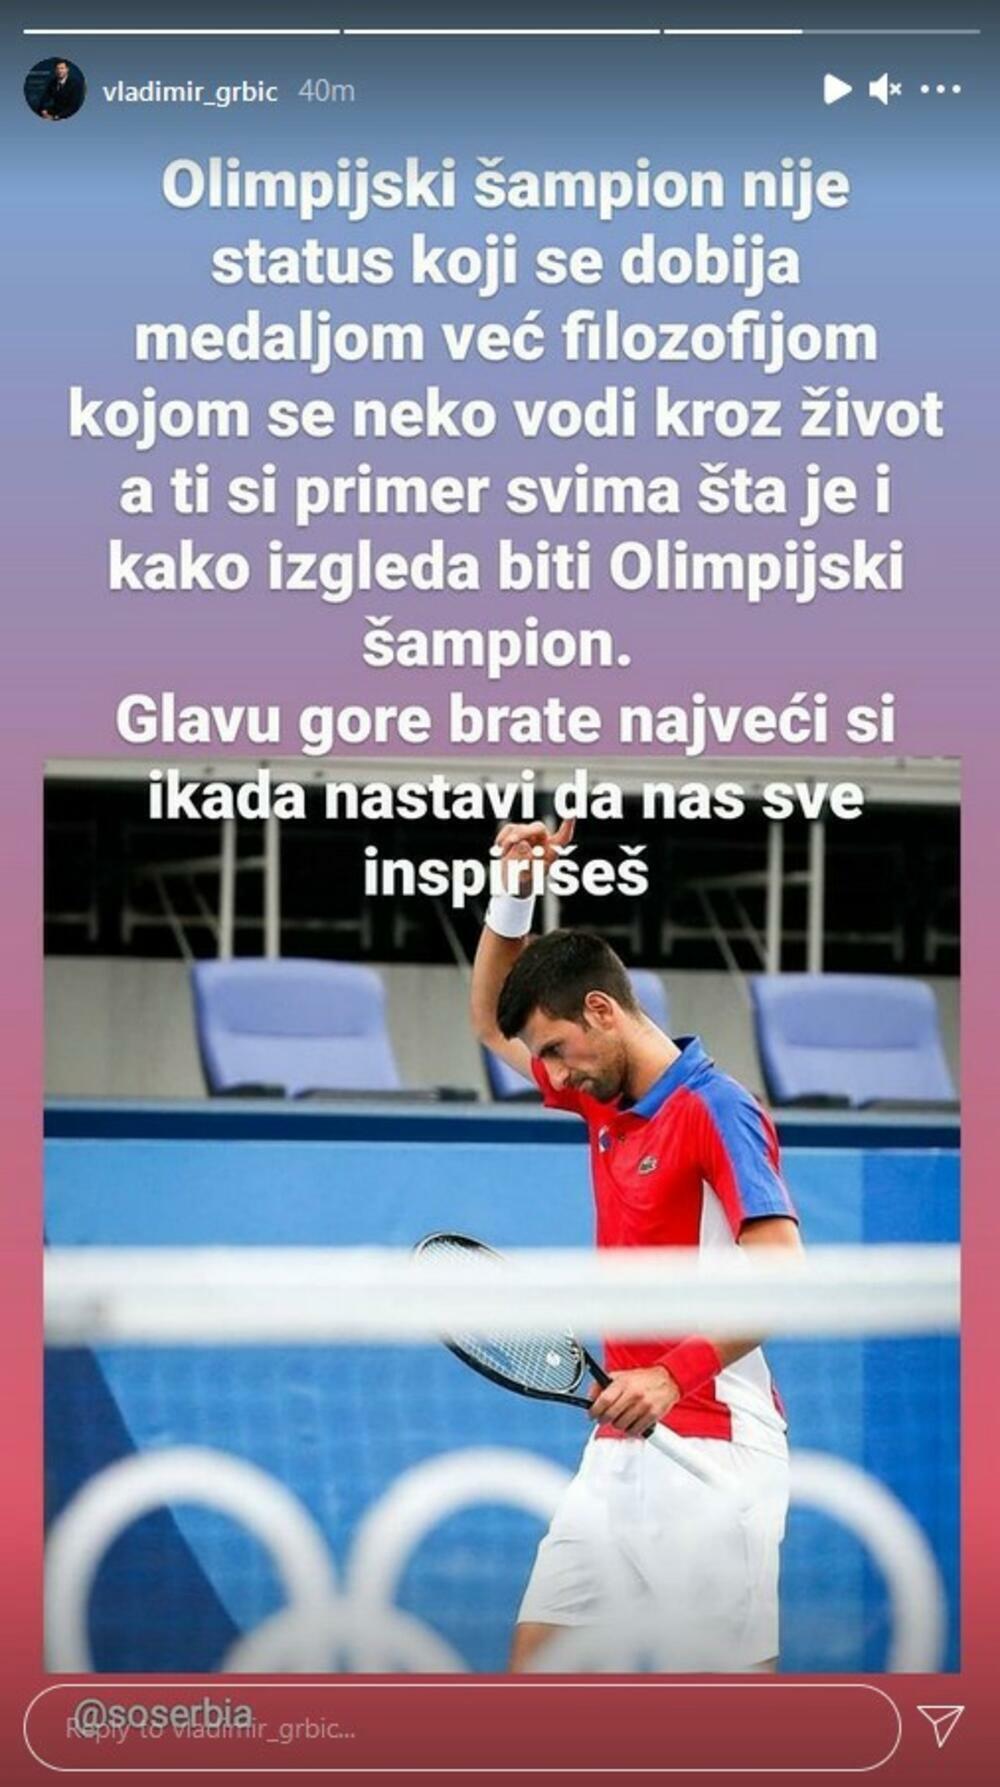 Vladimir Grbić, Novak Đoković